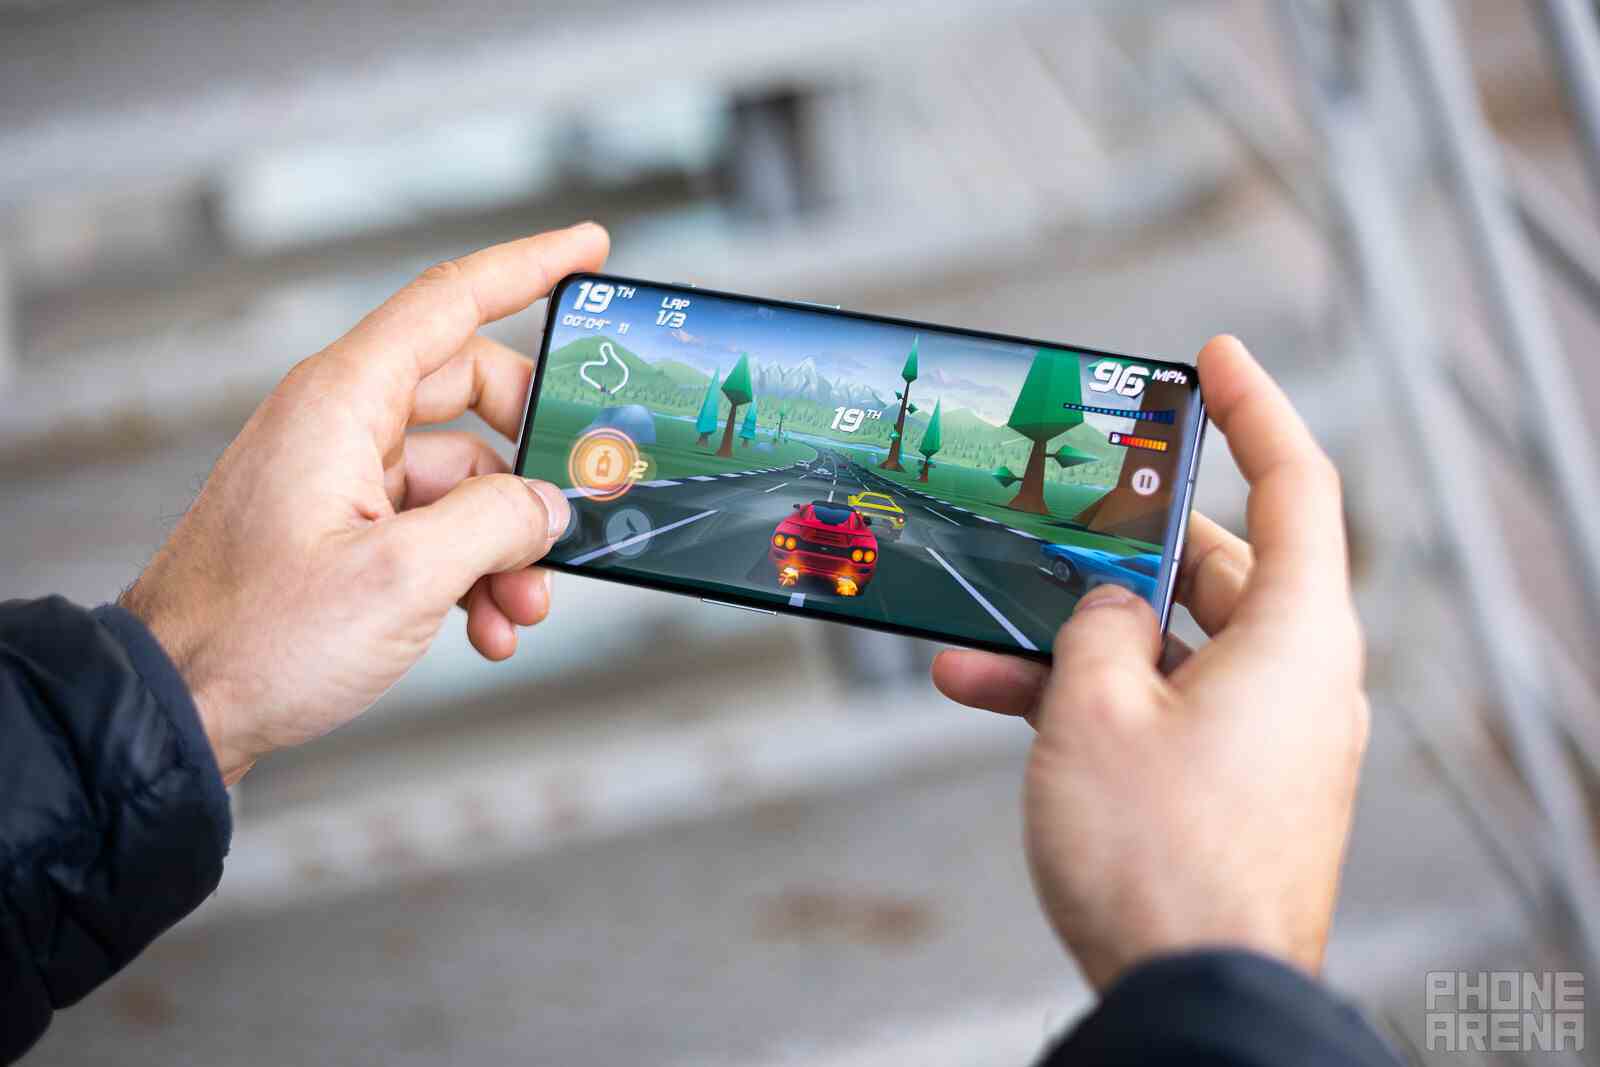 OnePlus 11: Yani sade bir oyun telefonu mu?  Önemli kolaylık özellikleri eksik olduğunda her şey güllük gülistanlık değildir